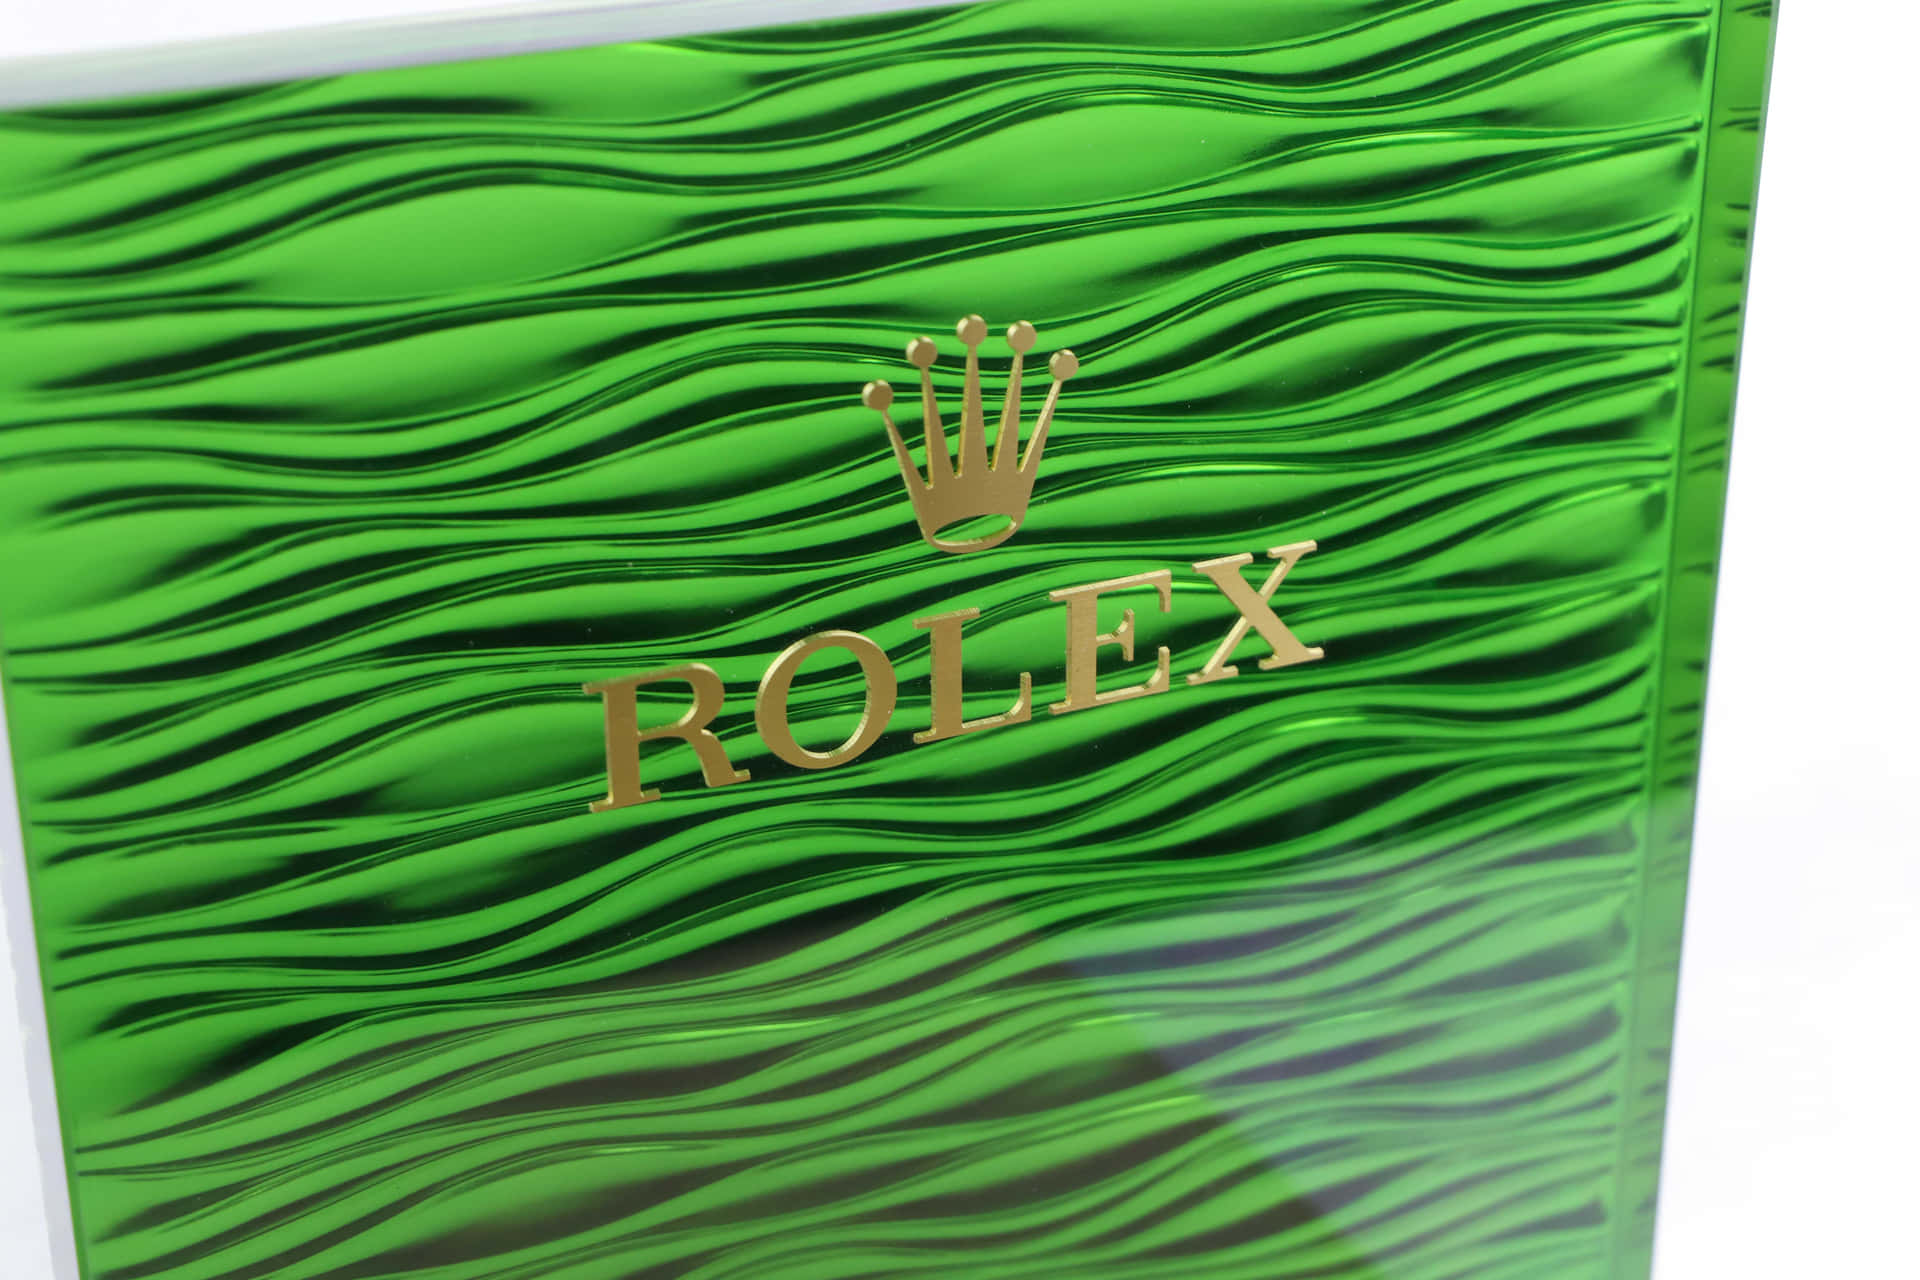 Fundodo Rolex Com Resolução De 6240 X 4160